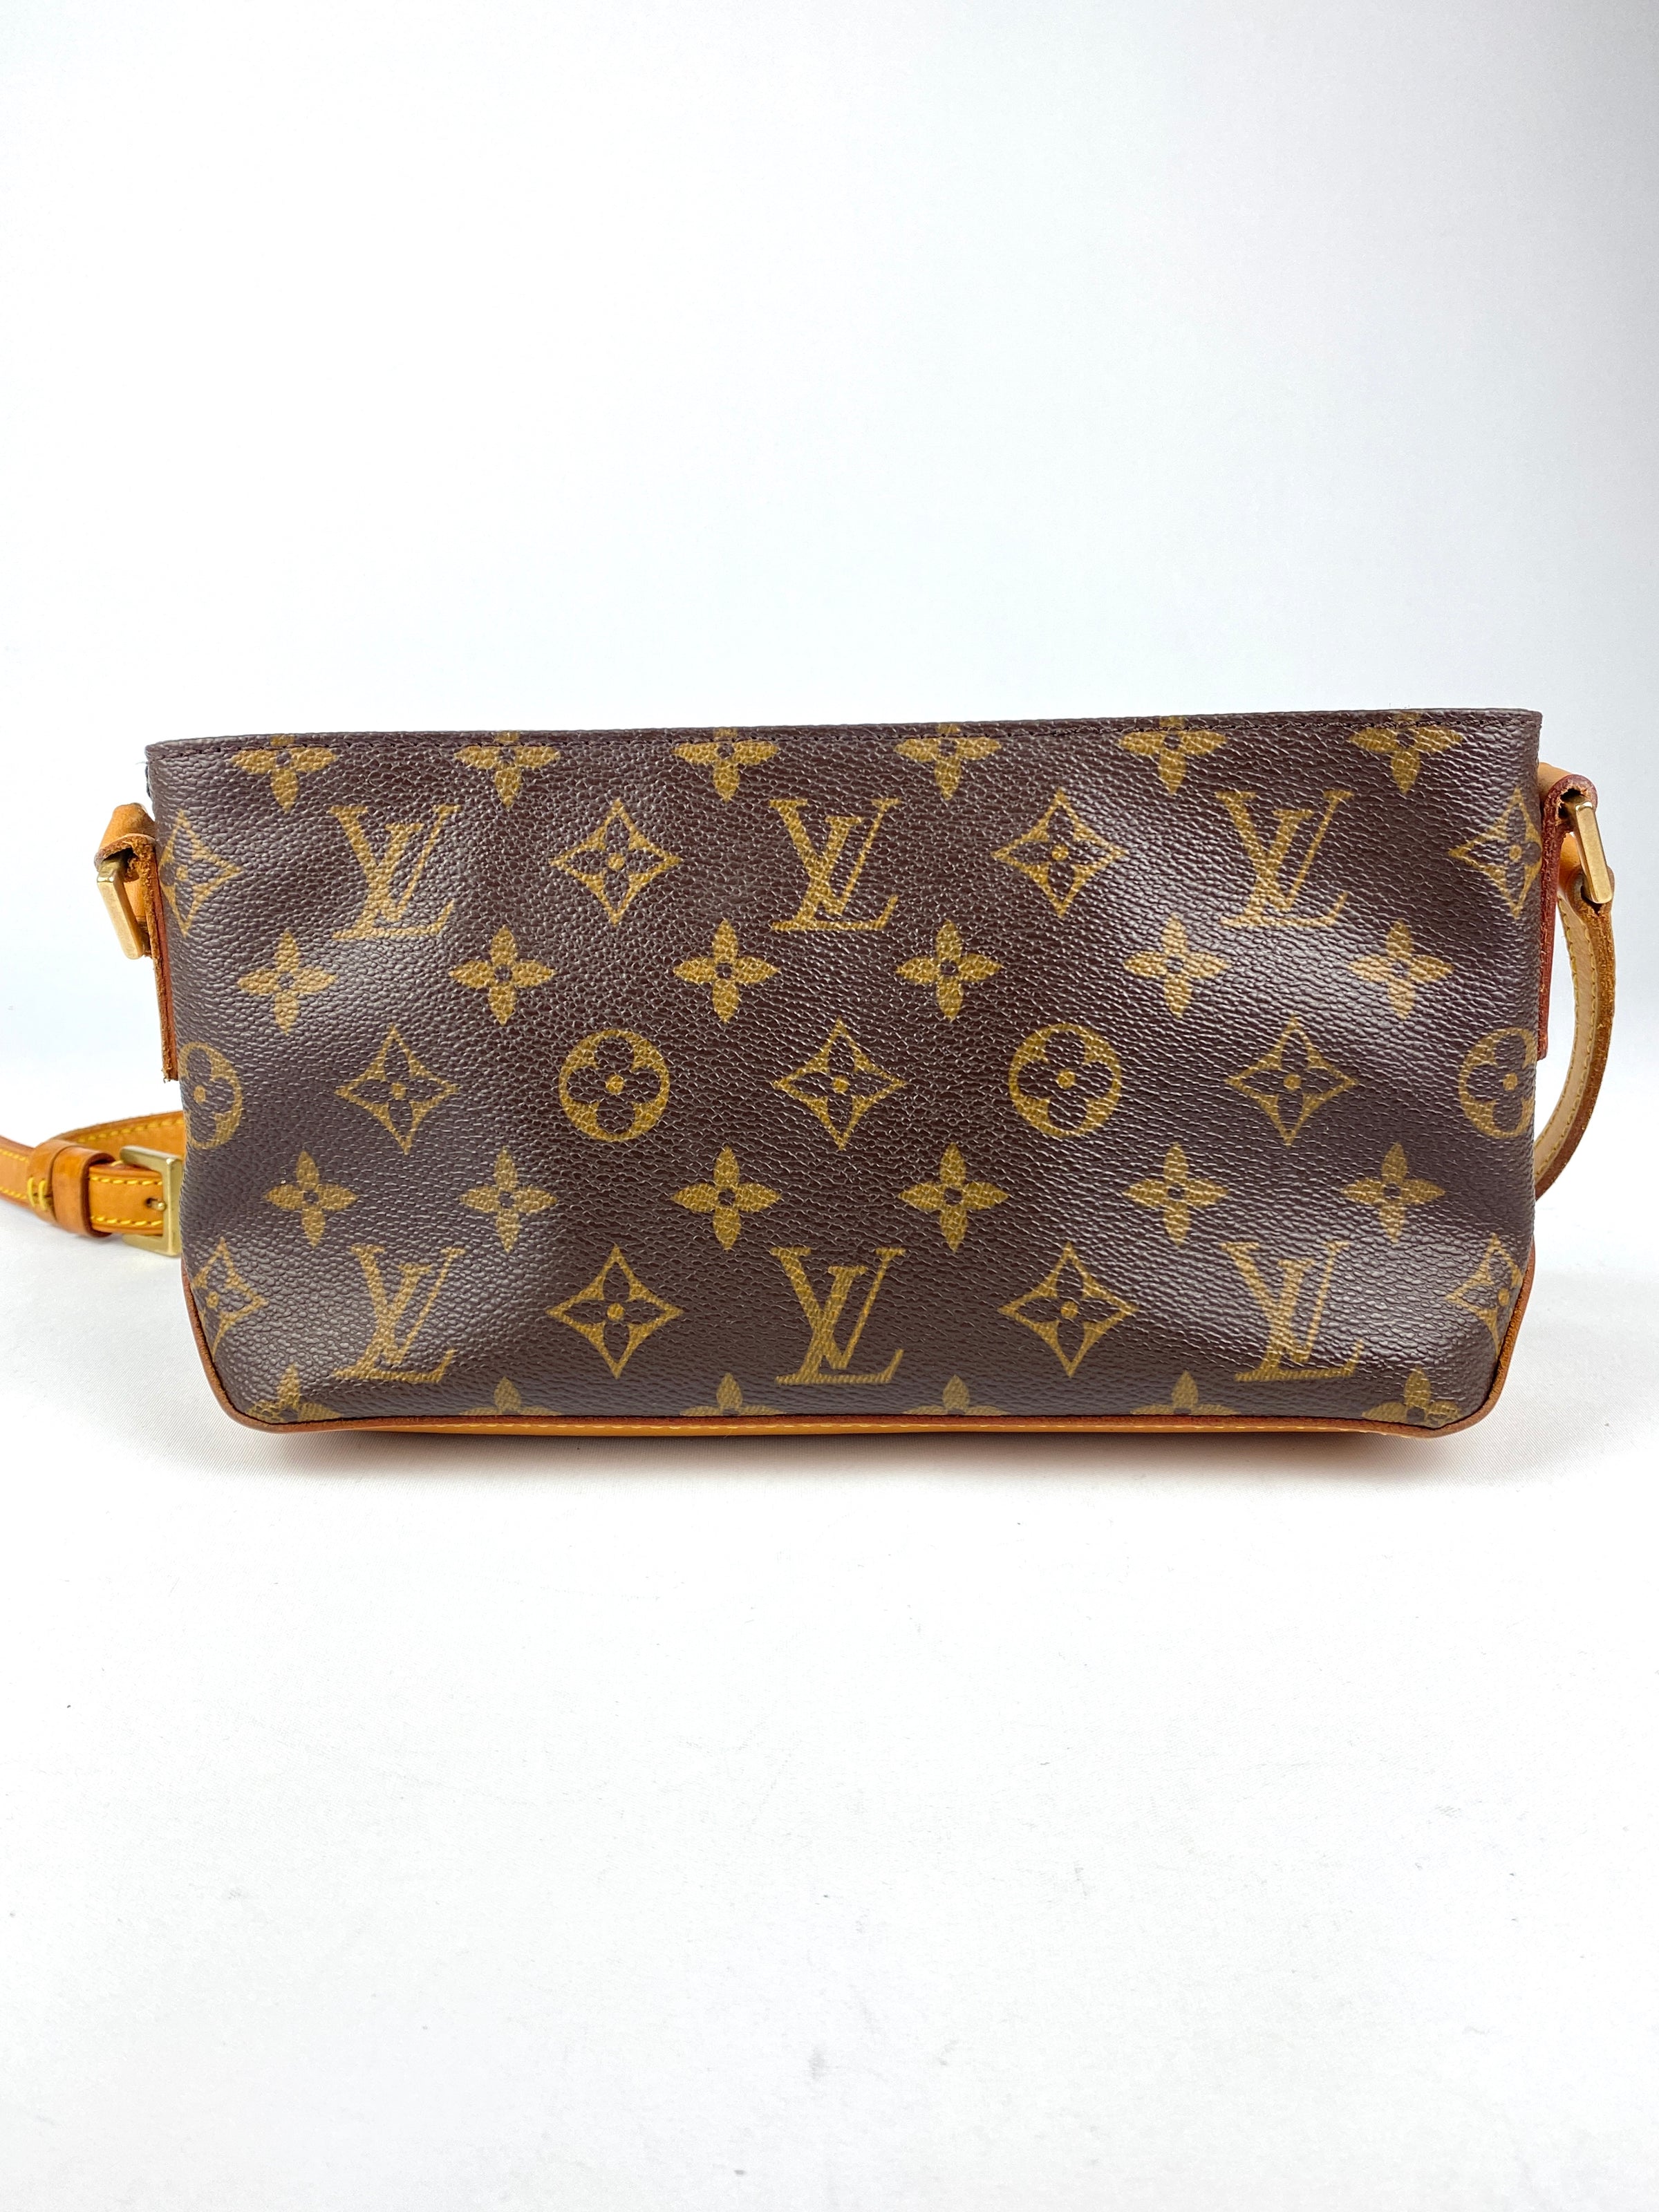 Louis Vuitton Trotteur Beaubourg Monogram Canvas Crossbody Bag on SALE